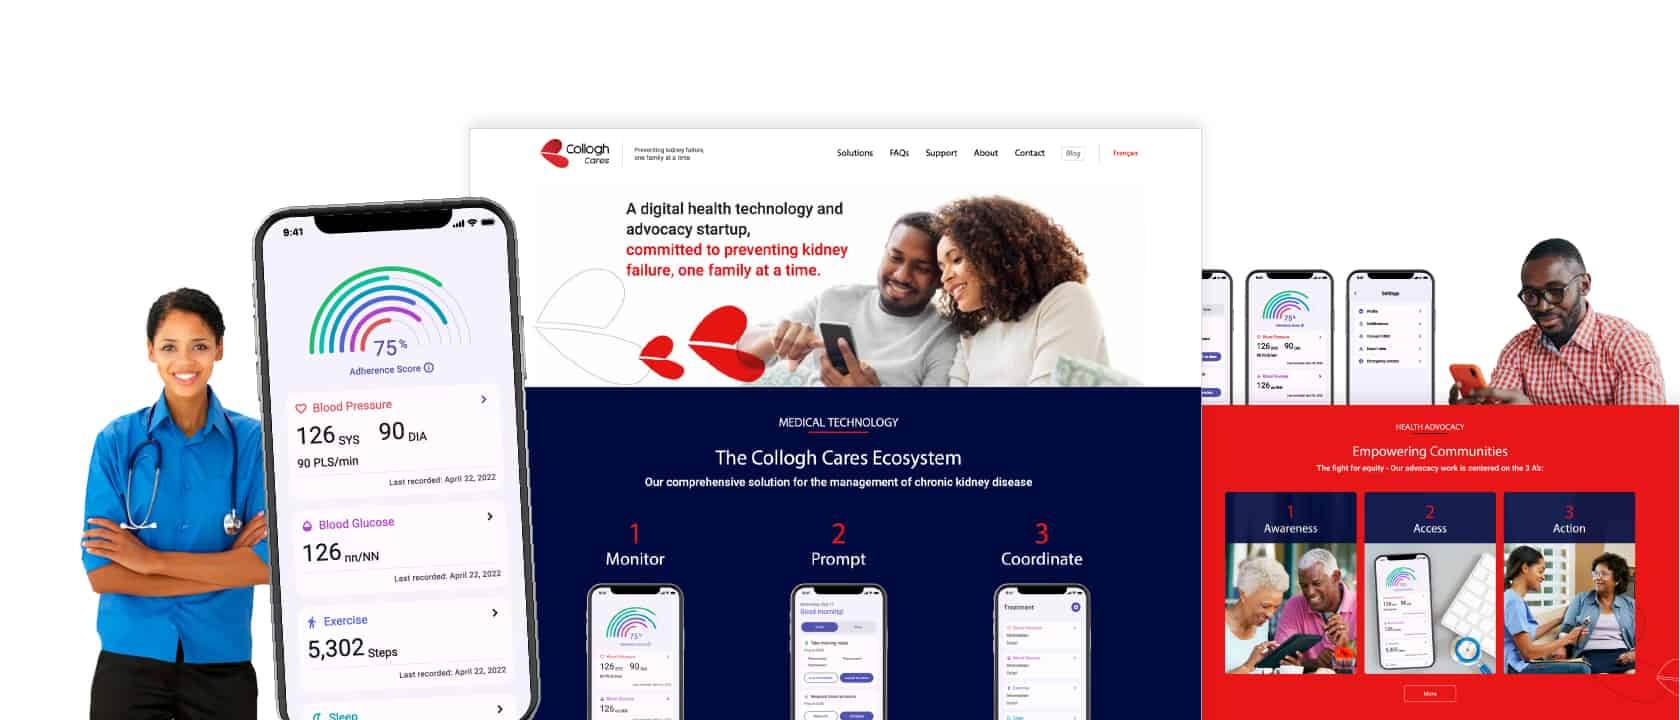 Téléphone mobile affichant l'application de Collogh Cares superposée à une capture d'écran de la page d'accueil de Collogh Cares